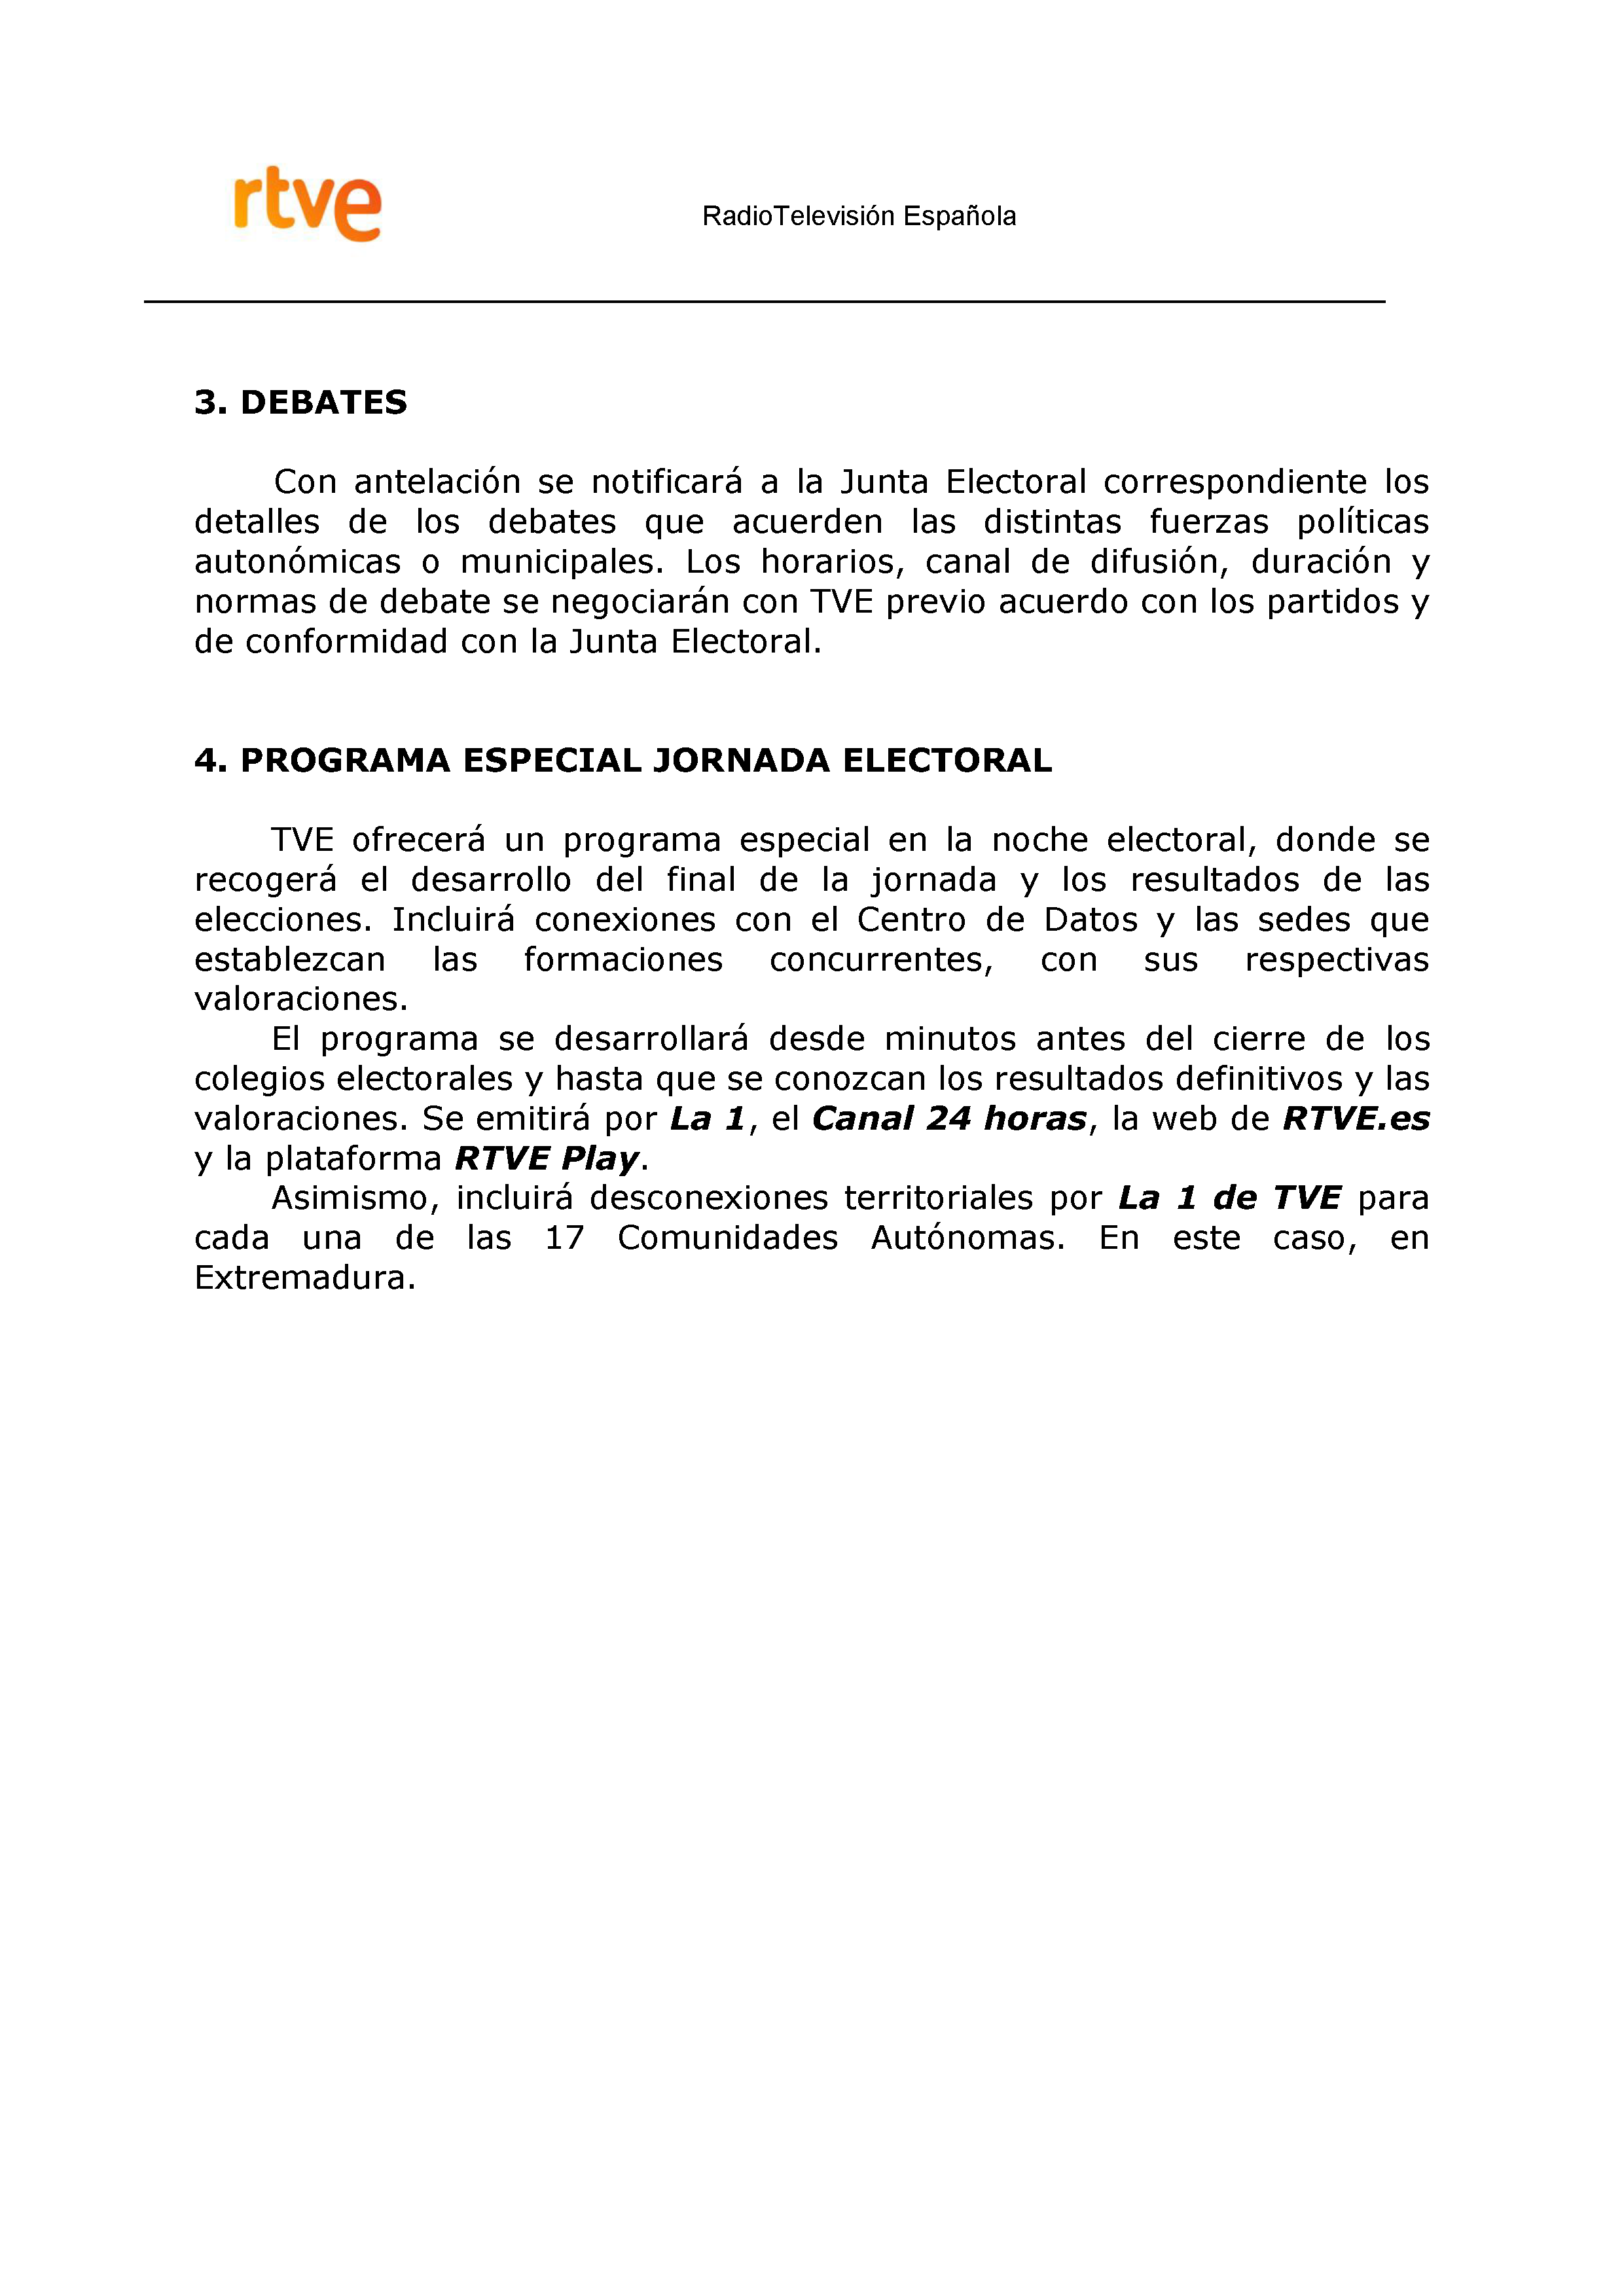 PLAN DE COBERTURA INFORMATIVA RTVE en Extremadura ELECCIONES MUNICIPALES Y AUTONÓMICAS Pag 8